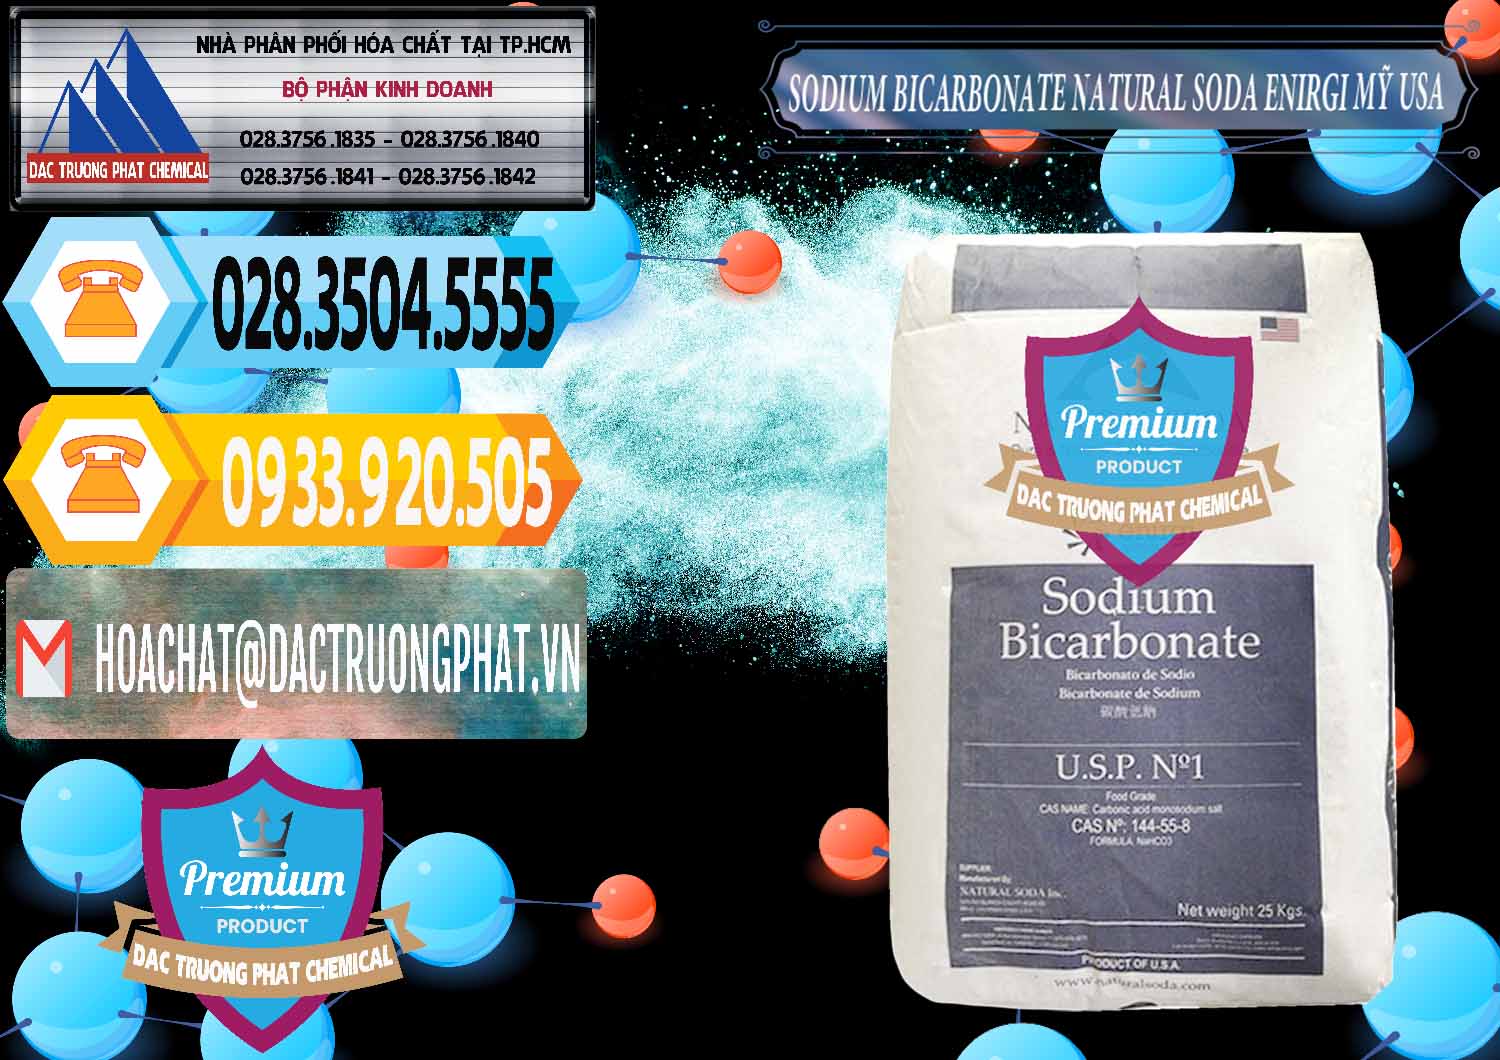 Công ty chuyên cung ứng - bán Sodium Bicarbonate – Bicar NaHCO3 Food Grade Natural Soda Enirgi Mỹ USA - 0257 - Đơn vị kinh doanh và cung cấp hóa chất tại TP.HCM - hoachattayrua.net